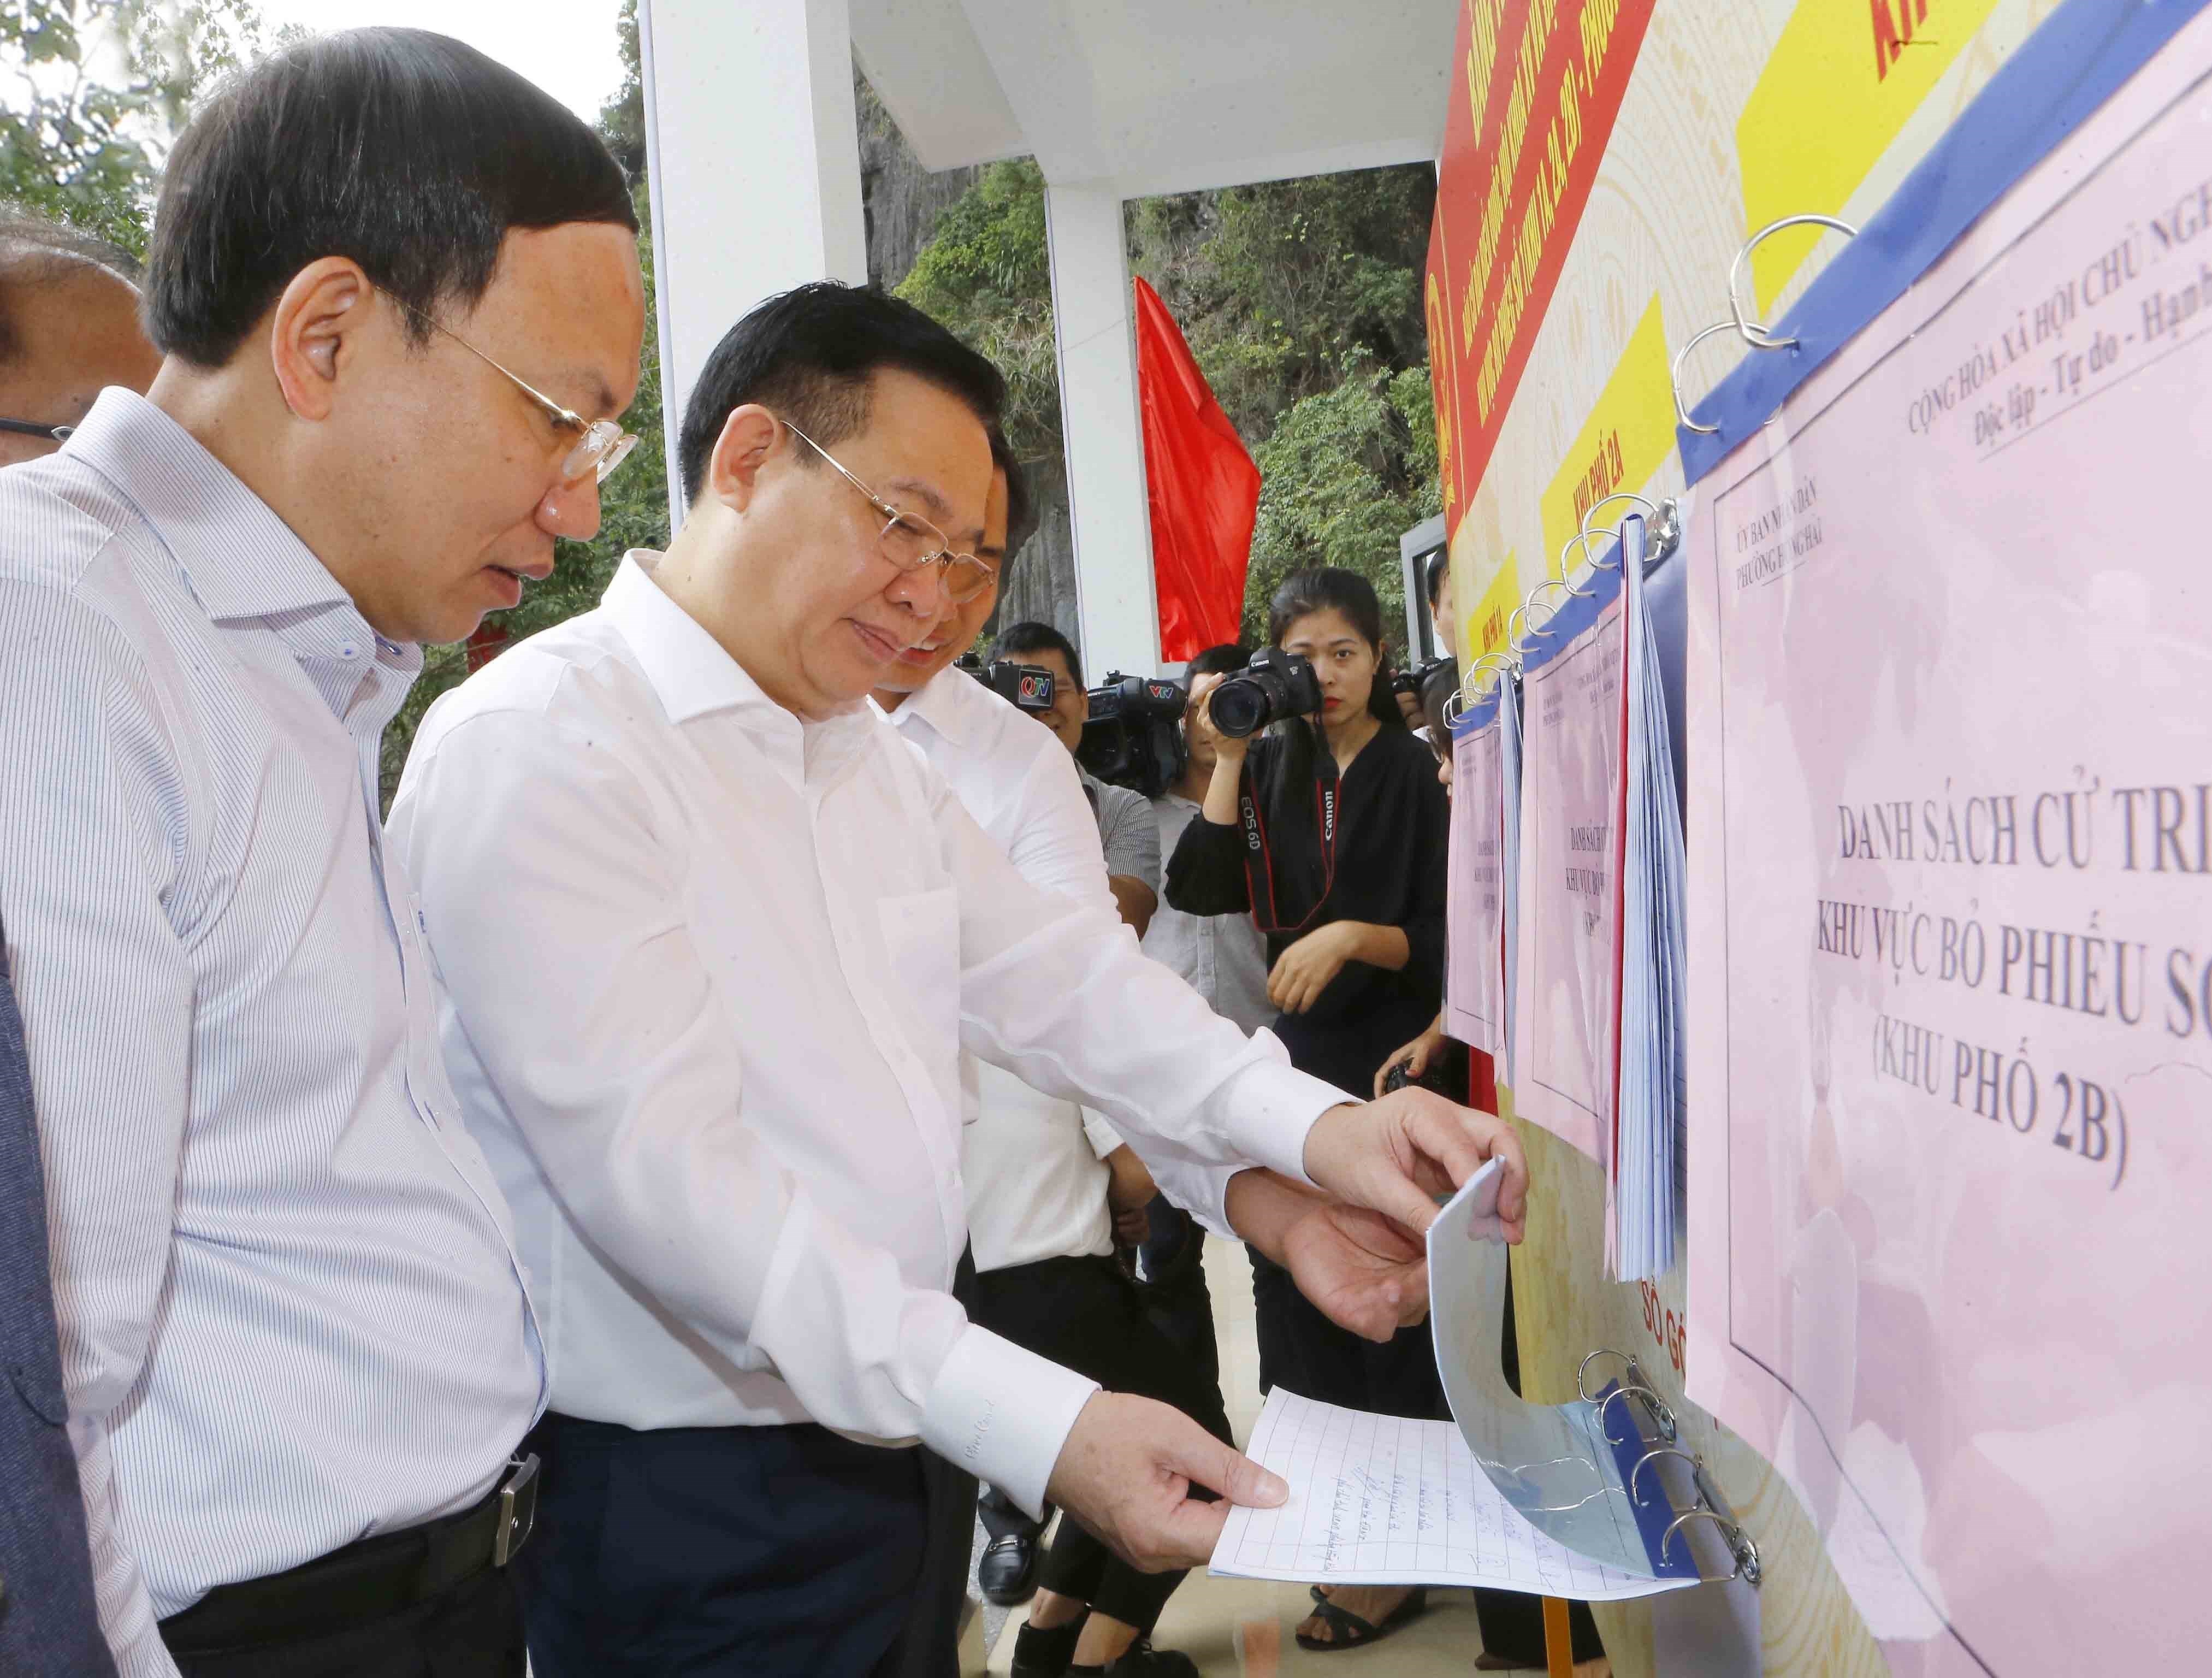 Le president de l'Assemblee nationale controle les preparatifs des prochaines elections a Quang Ninh hinh anh 2